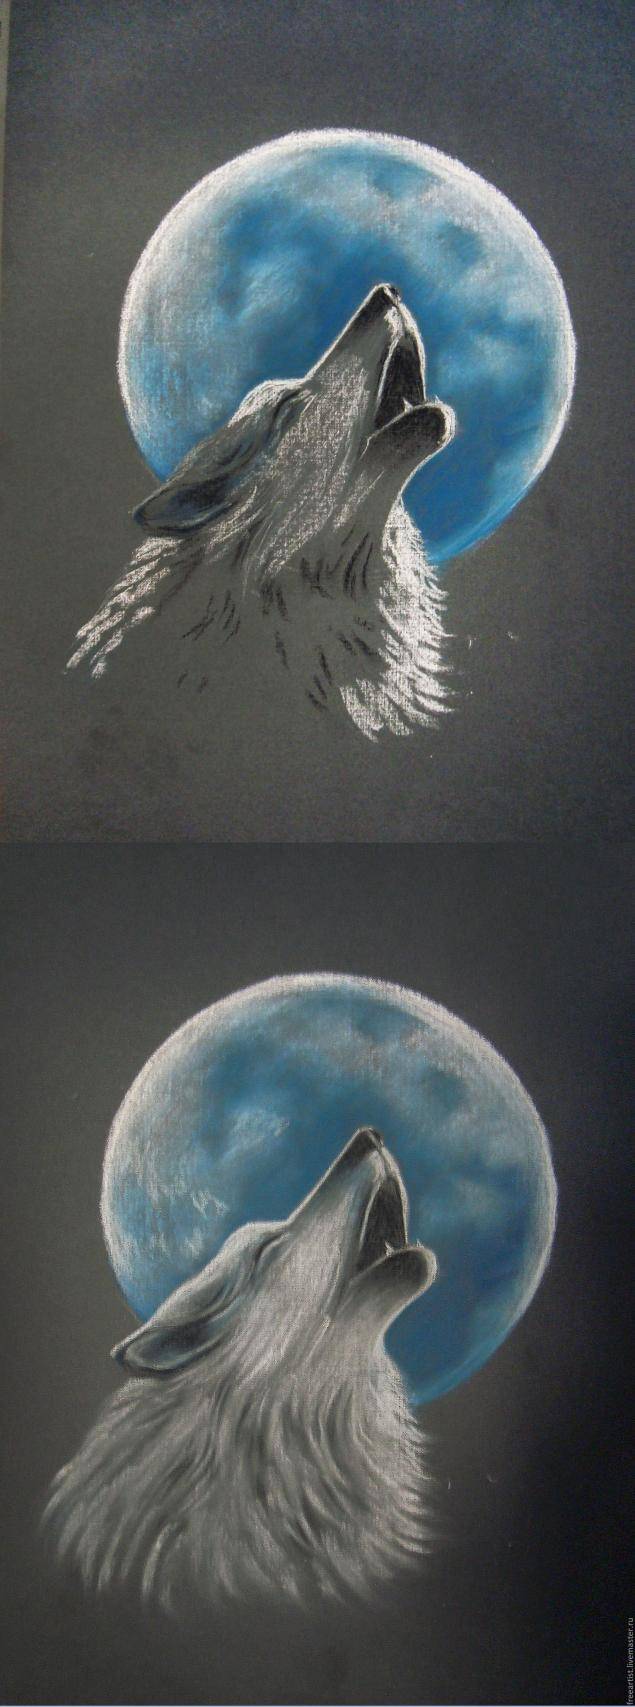 Волк, воющий на луну» в технике сухая пастель